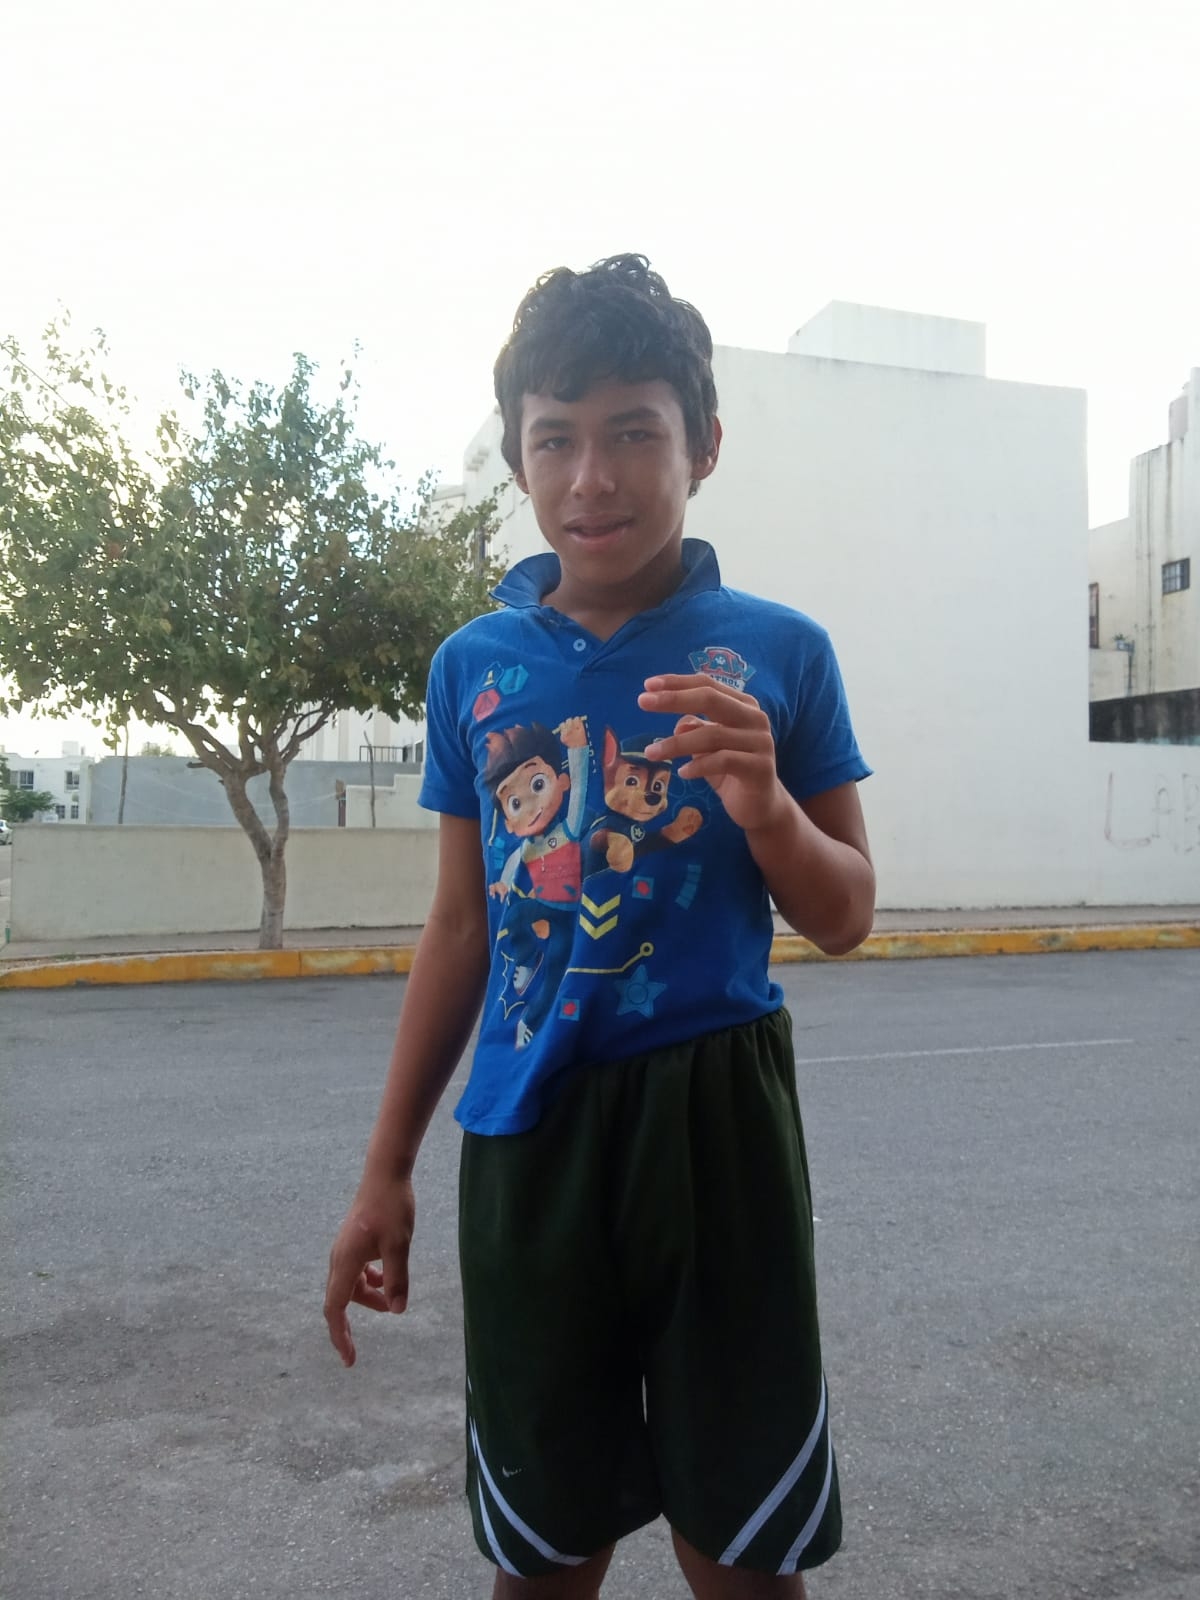 Menor de 14 años desaparecido en Playa del Carmen; piden ayuda para encontrarlo